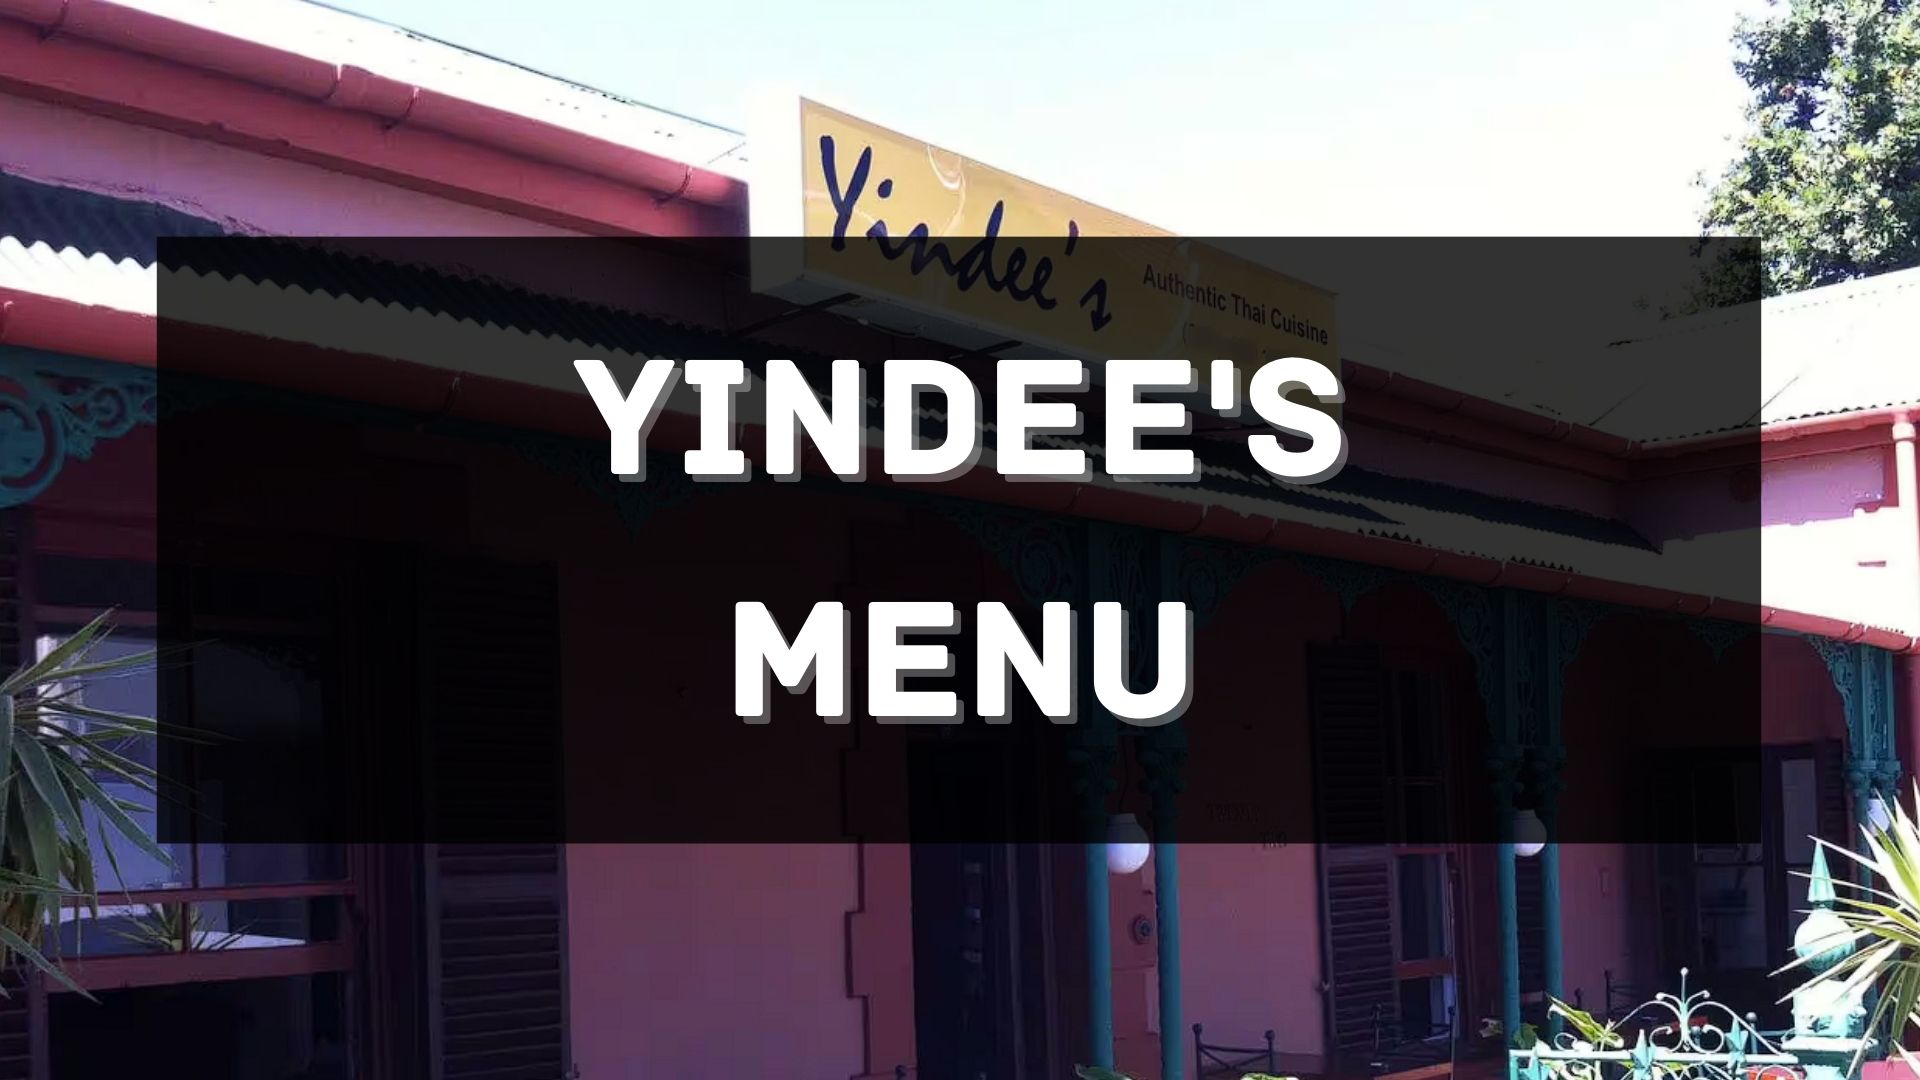 Yindees Menu South Africa